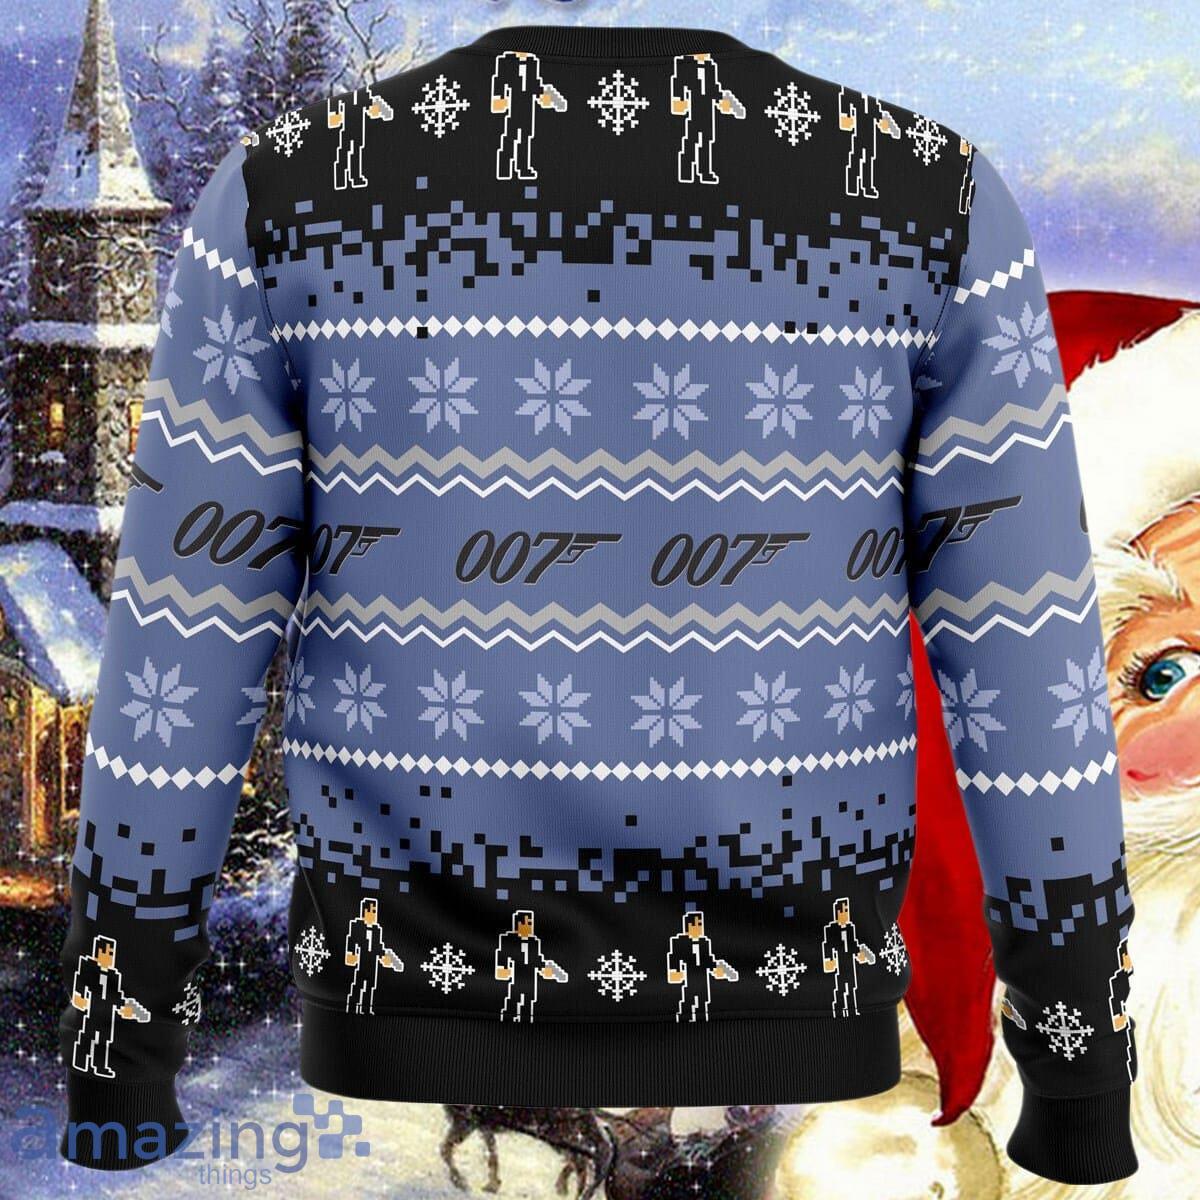 james-bond-ugly-christmas-sweater-impressive-gift-for-men-and-women-1.jpg